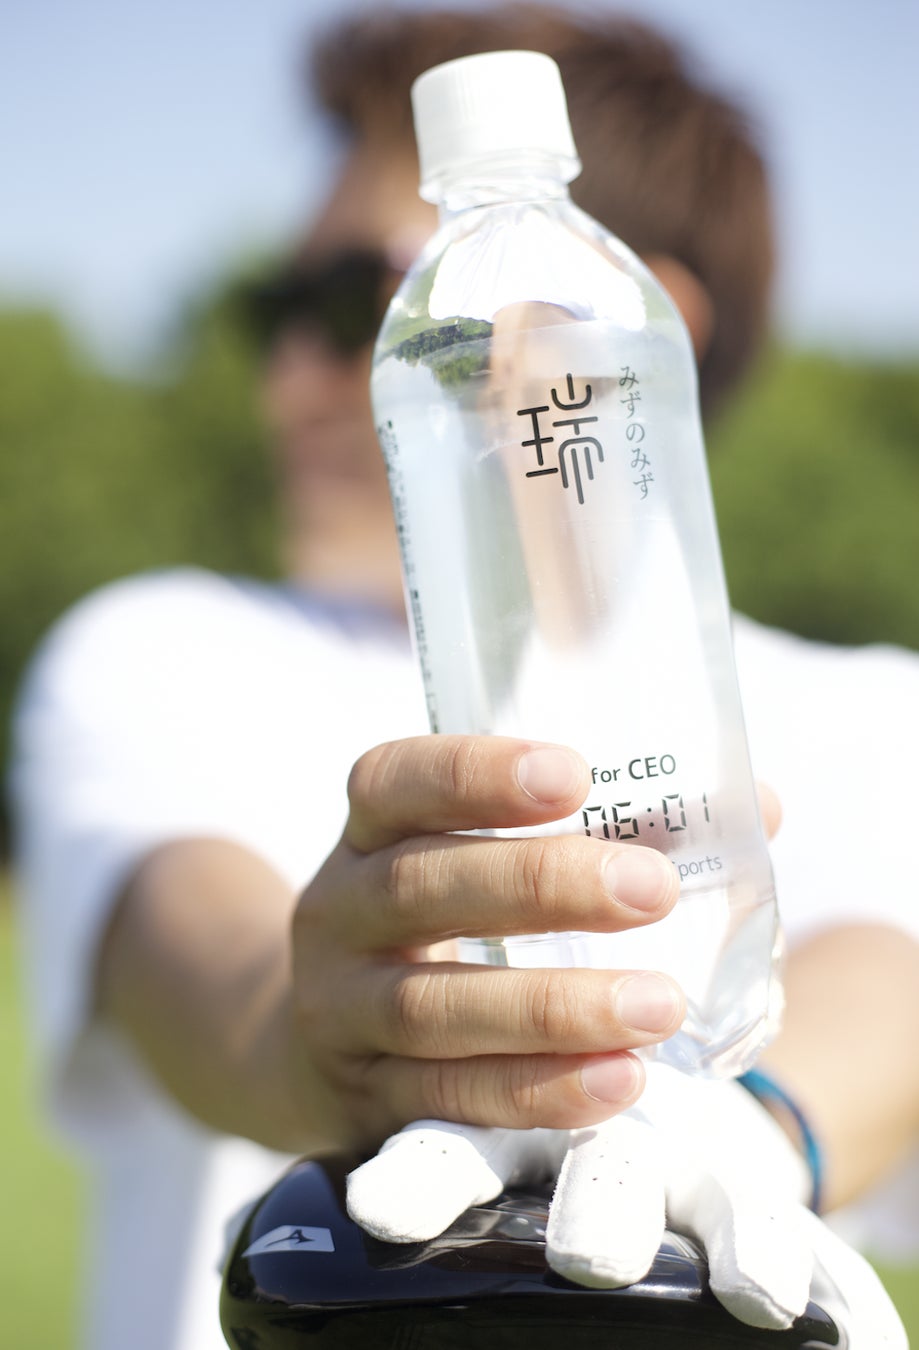 世界初、経営者のための”水”を販売開始。その名は【みずのみず for CEO】。限定1200本の特別な”水”を社会のために戦い続ける経営者たちへ！#IVSPRWeekのサブ画像7